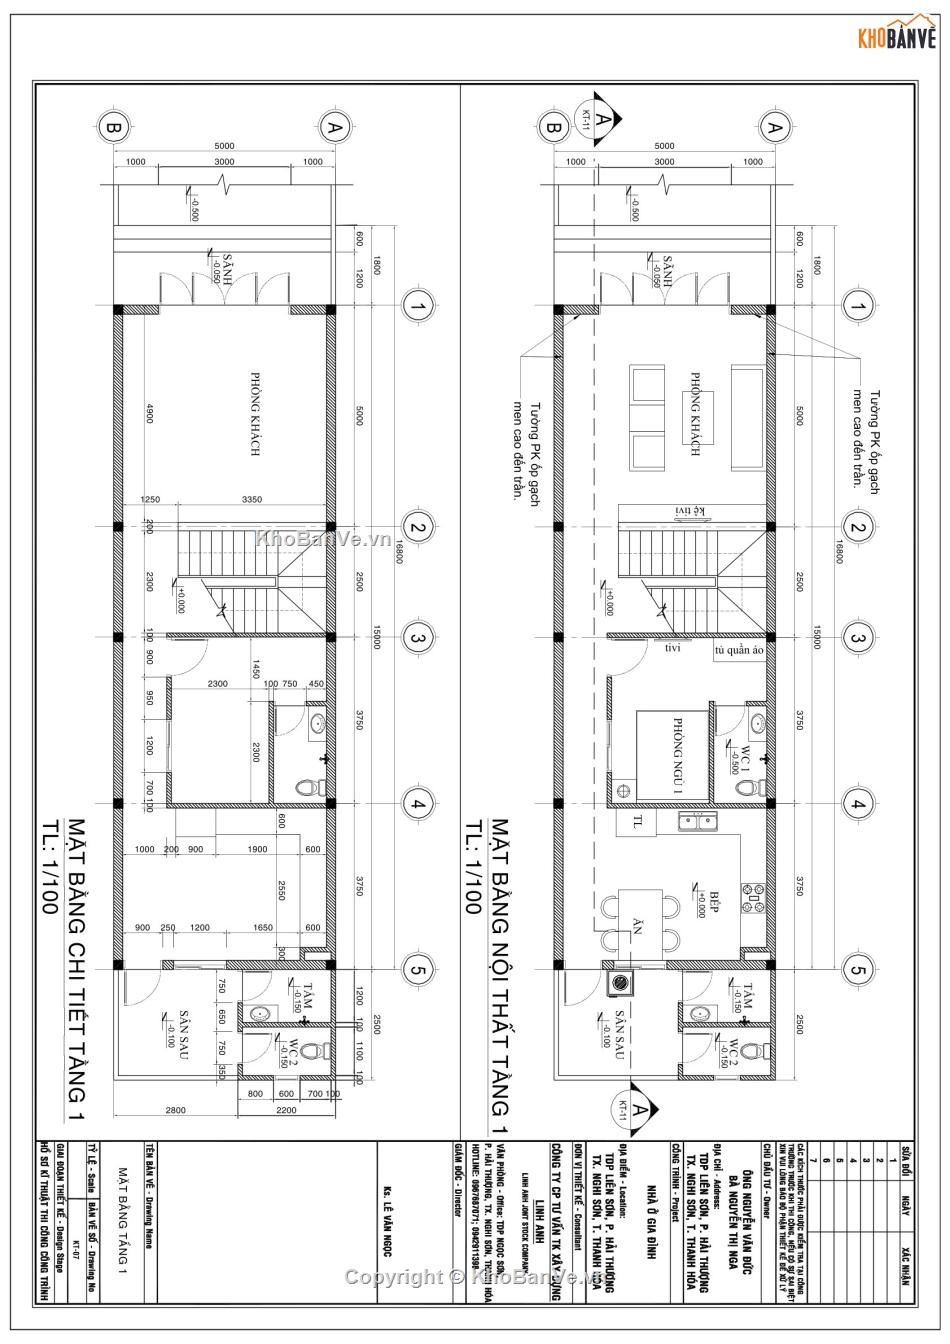 nhà phố 2 tầng 5x16.2m,hồ sơ bản vẽ nhà 2 tầng,Autocad nhà phố 2 tầng,thiết kế nhà phố 2 tầng,sketchup nhà phố 2 tầng,cad nhà phố 2 tầng